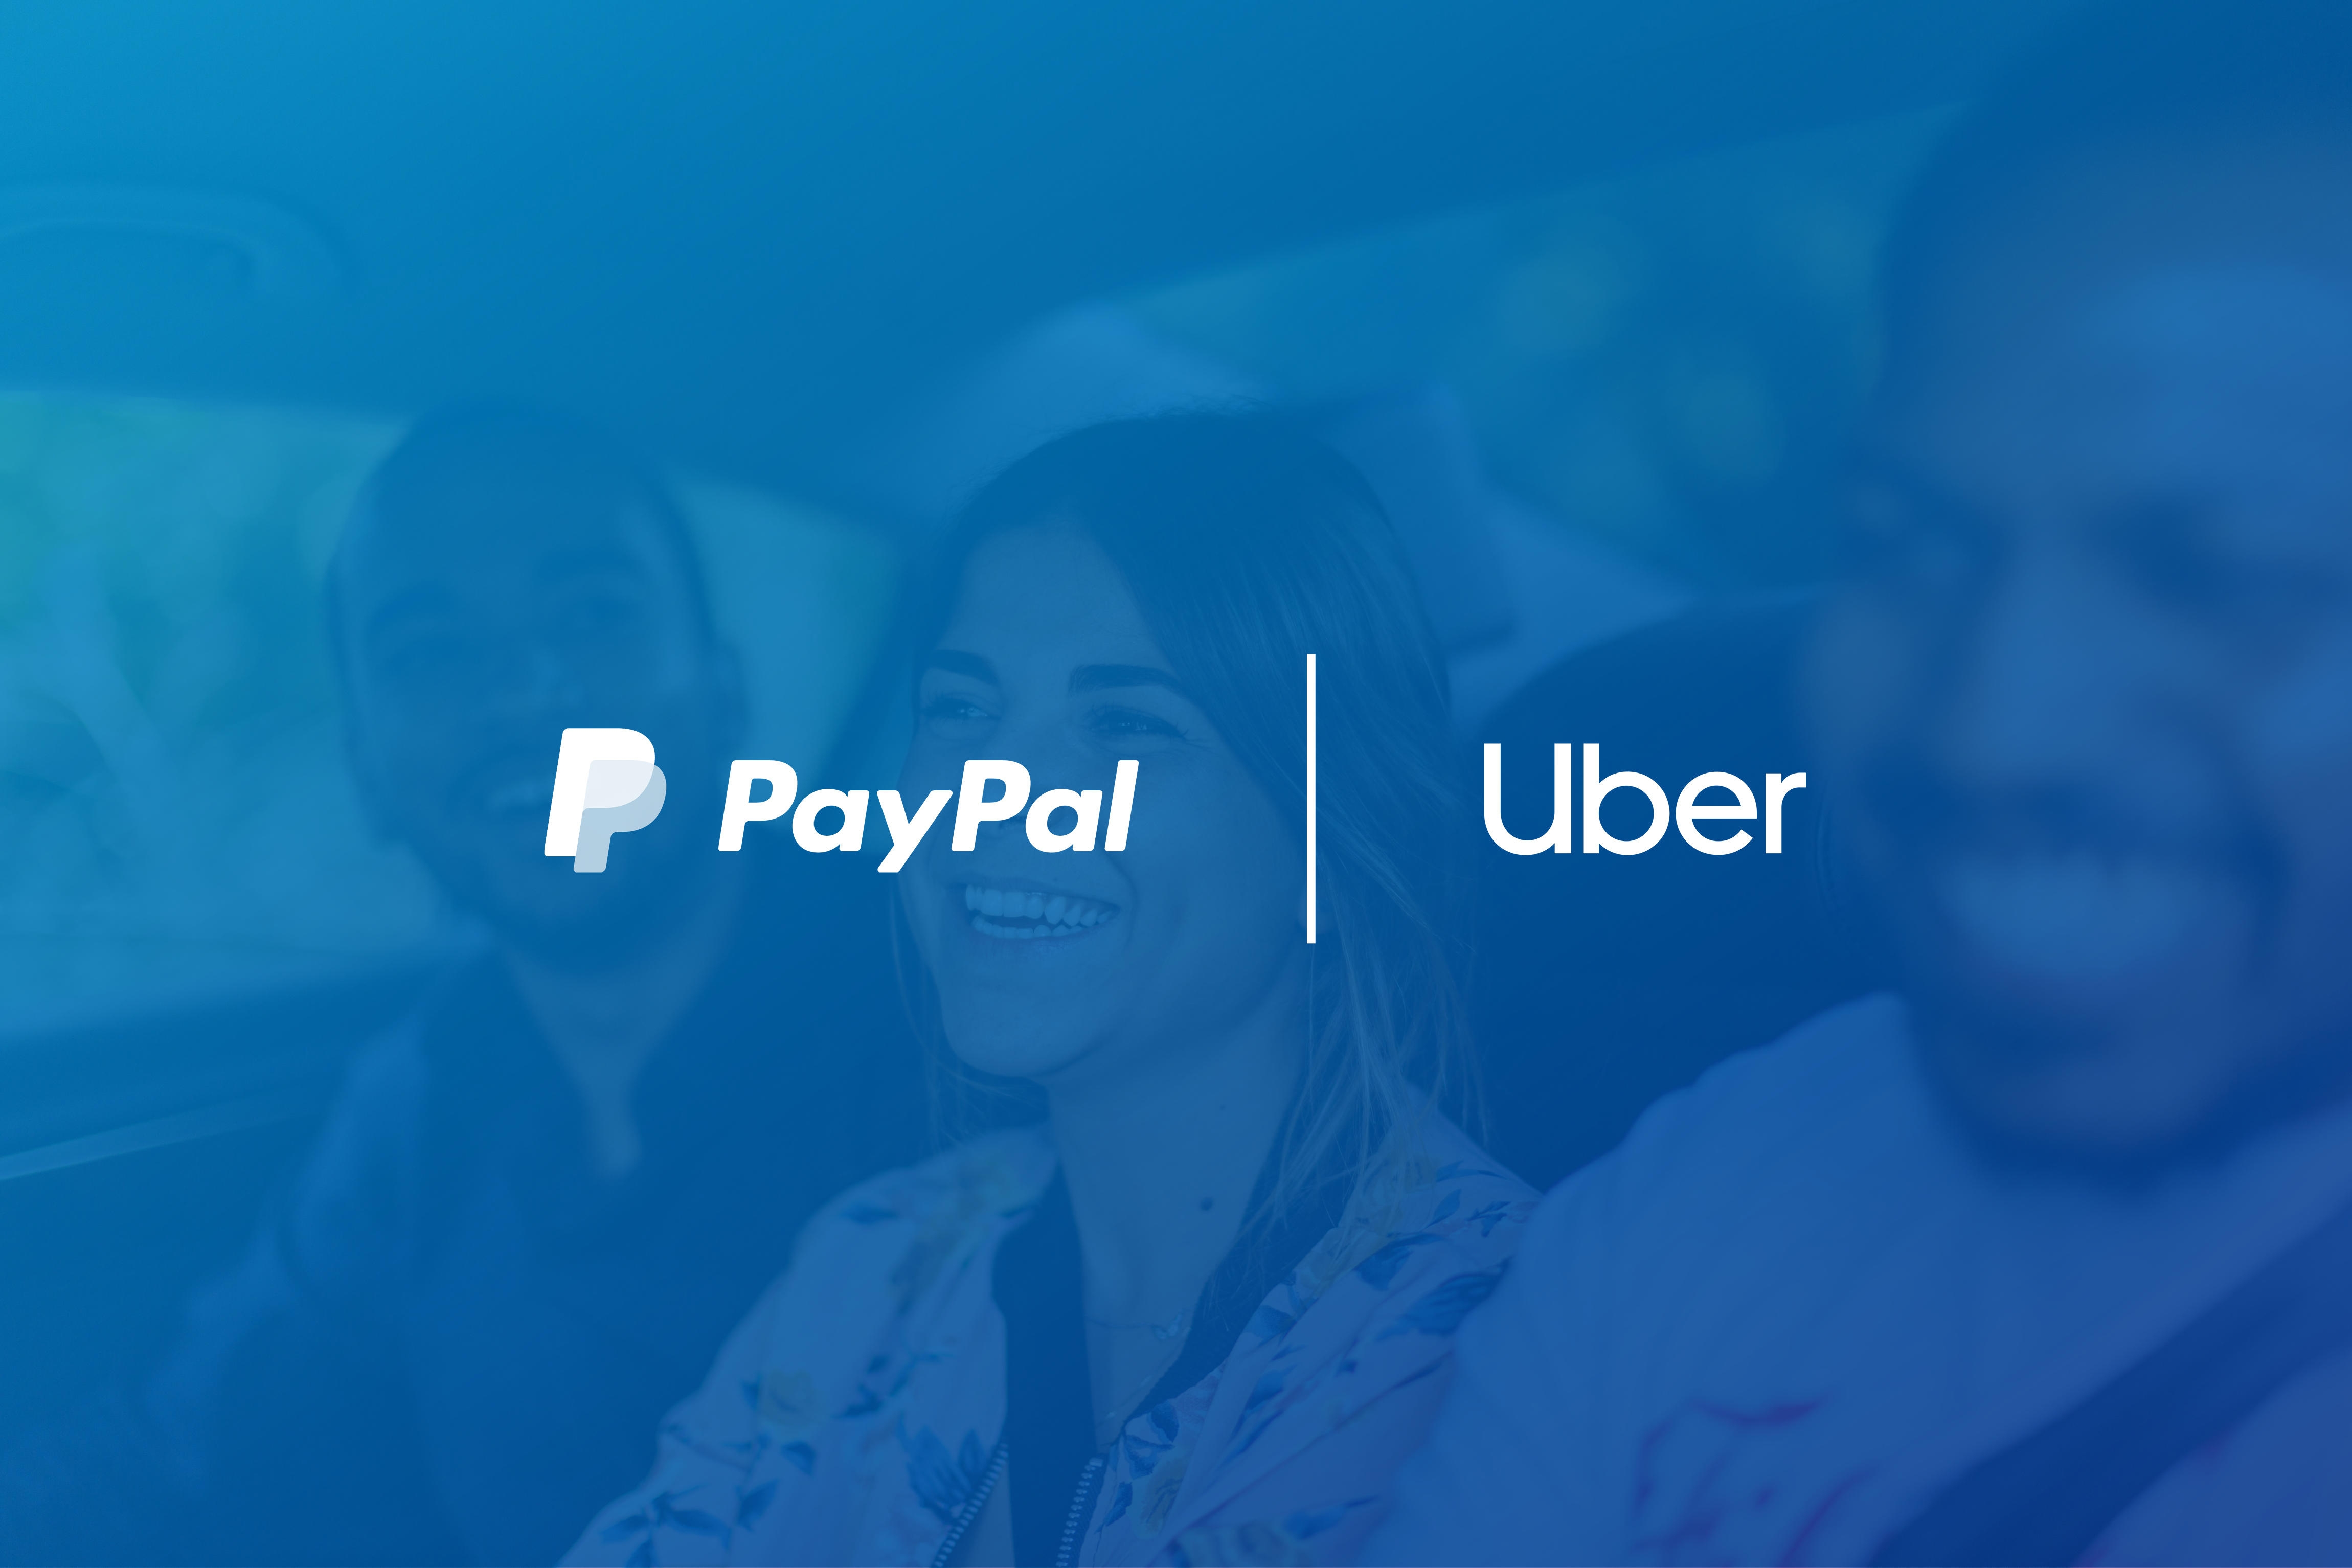  С 2013 года PayPal поддерживает возможности электронных платежей в Uber в качестве их ведущего партнера по обработке платежей в США и Австралии. 